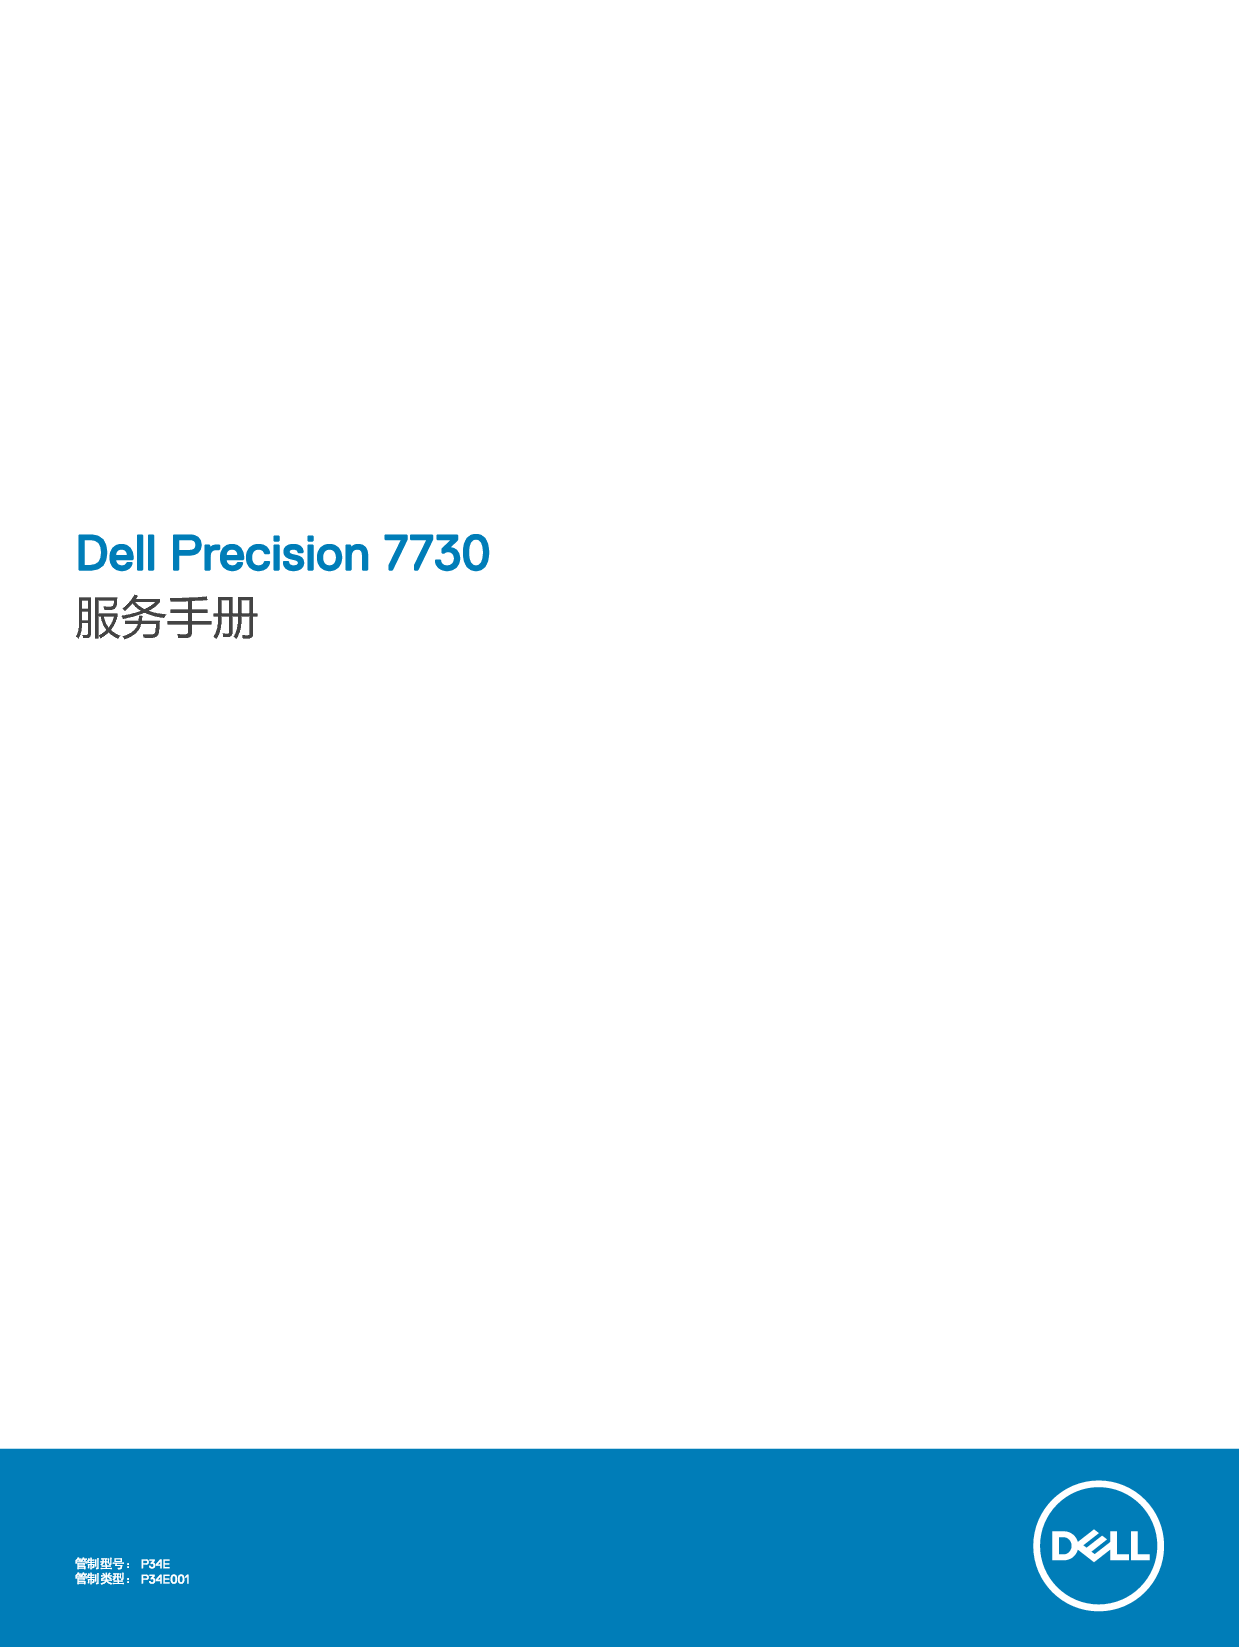 戴尔 Dell Precision 7730 维修服务手册 封面